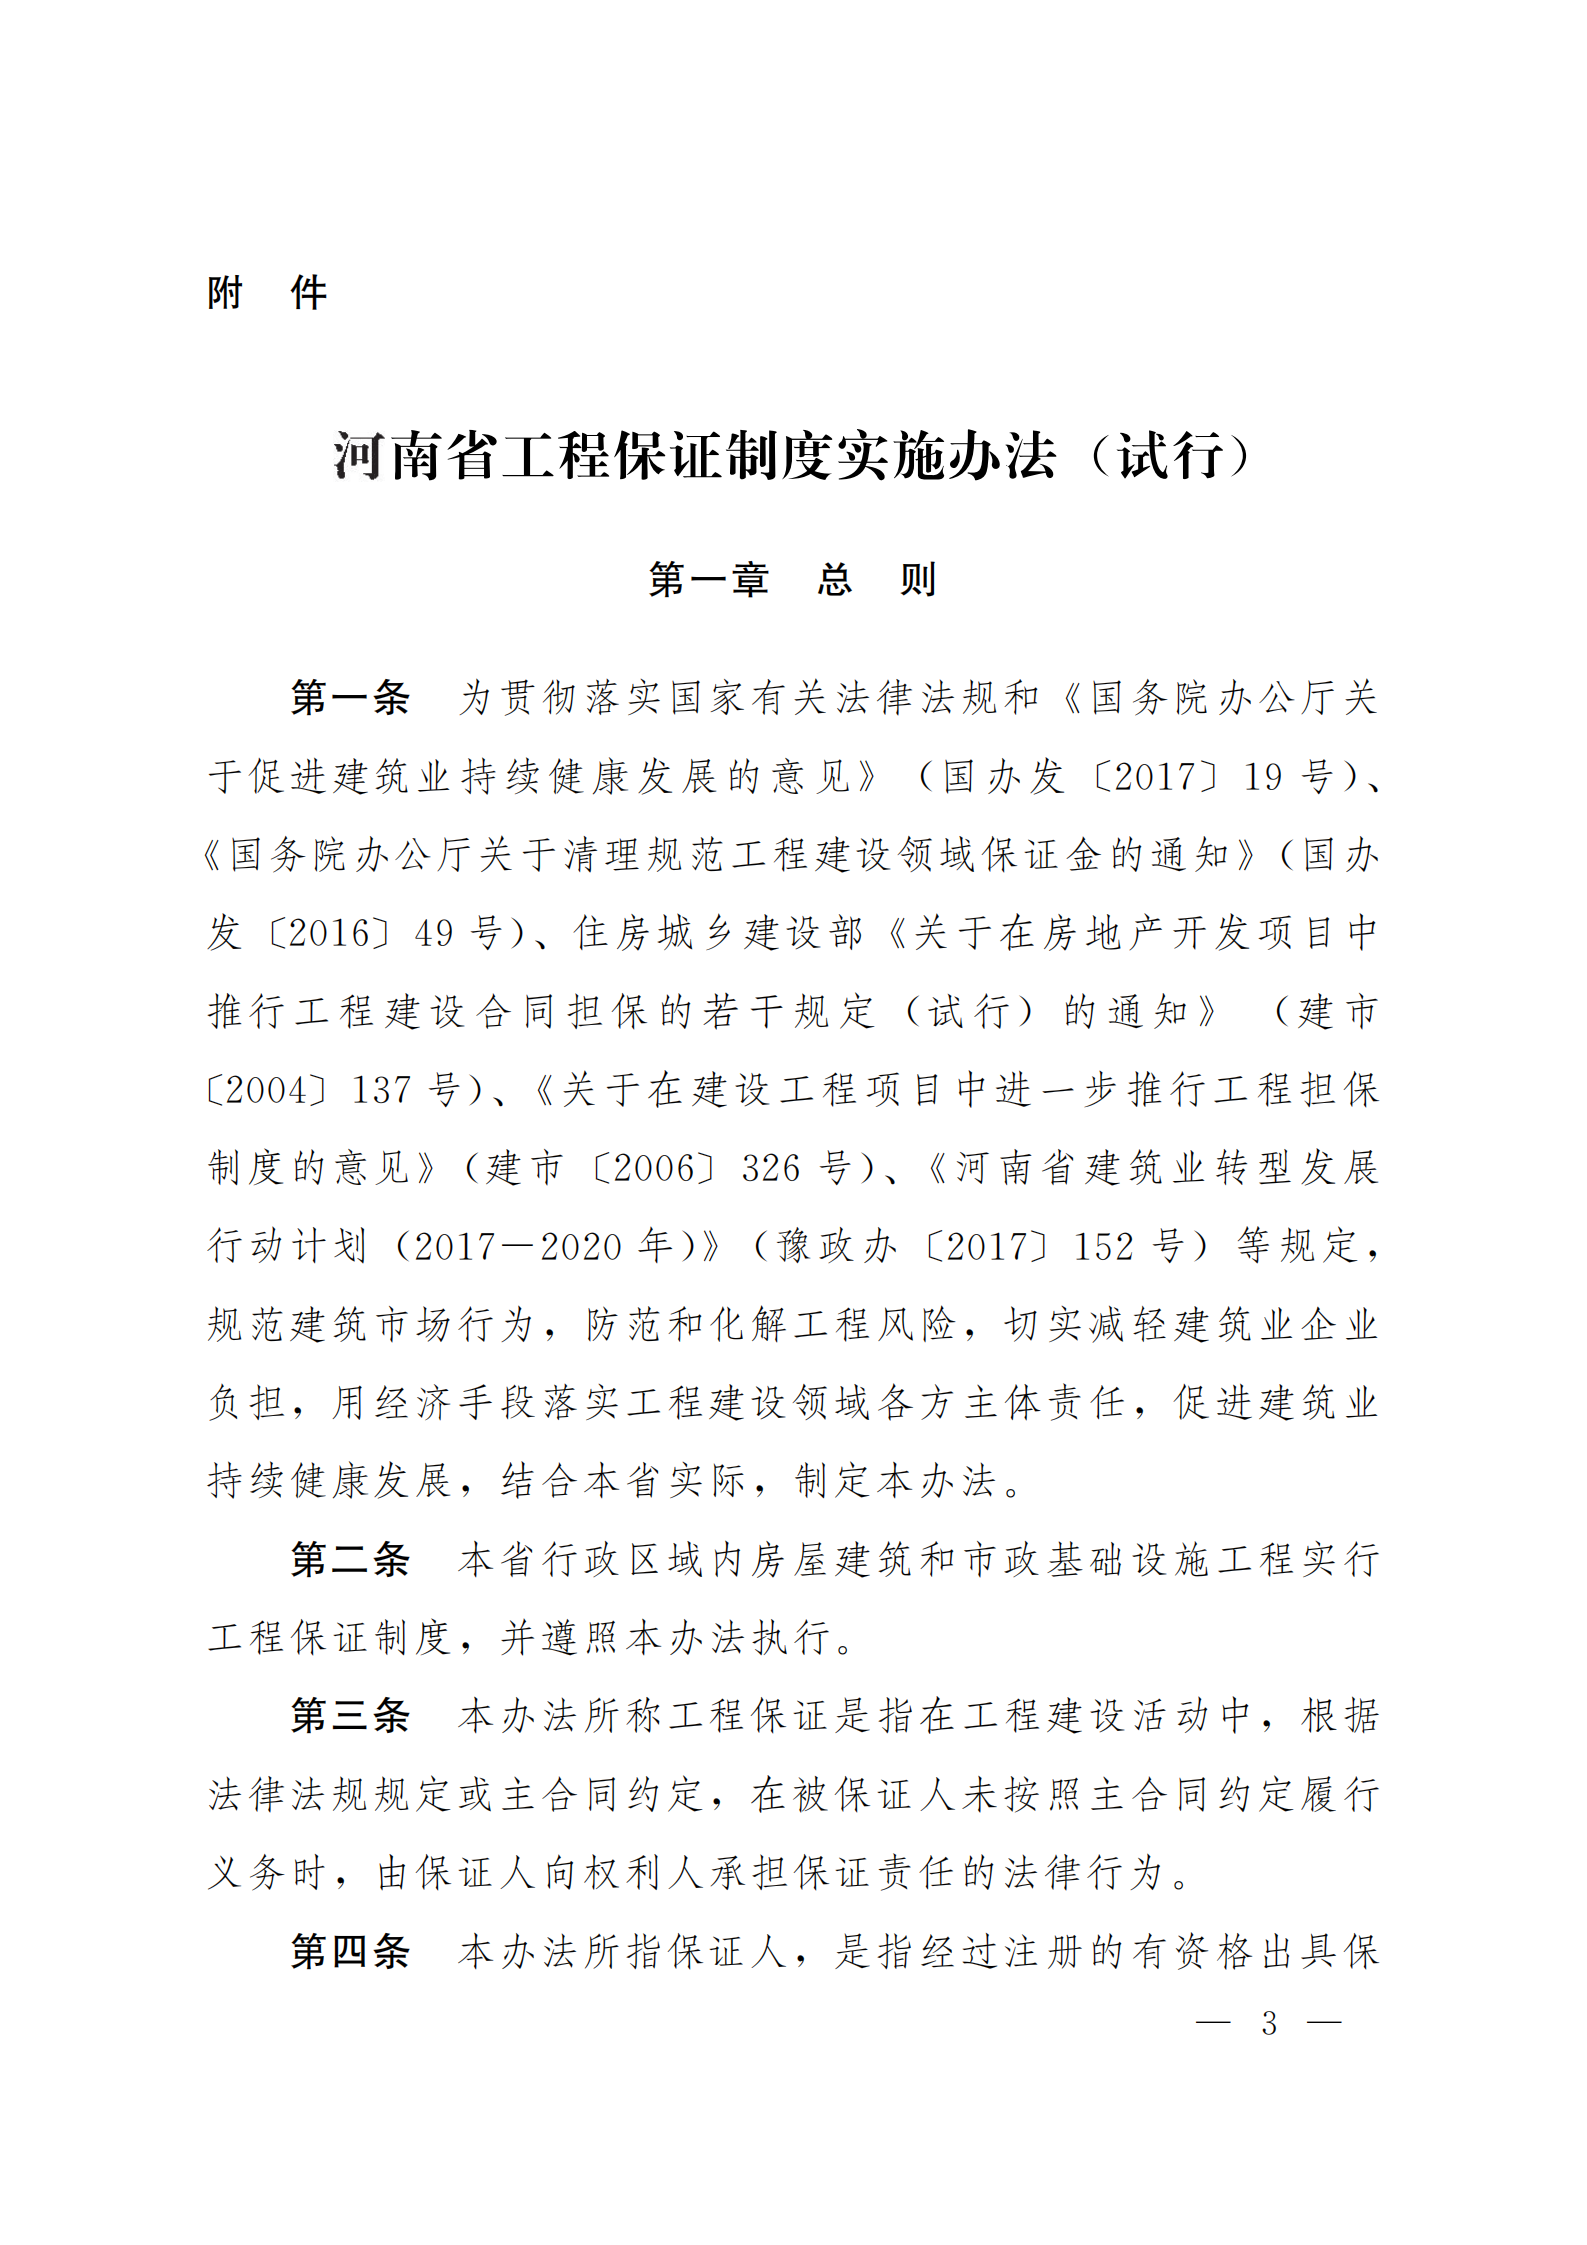 河南省工程保证制度实施办法（试行）  豫建[2018]14号_02.png